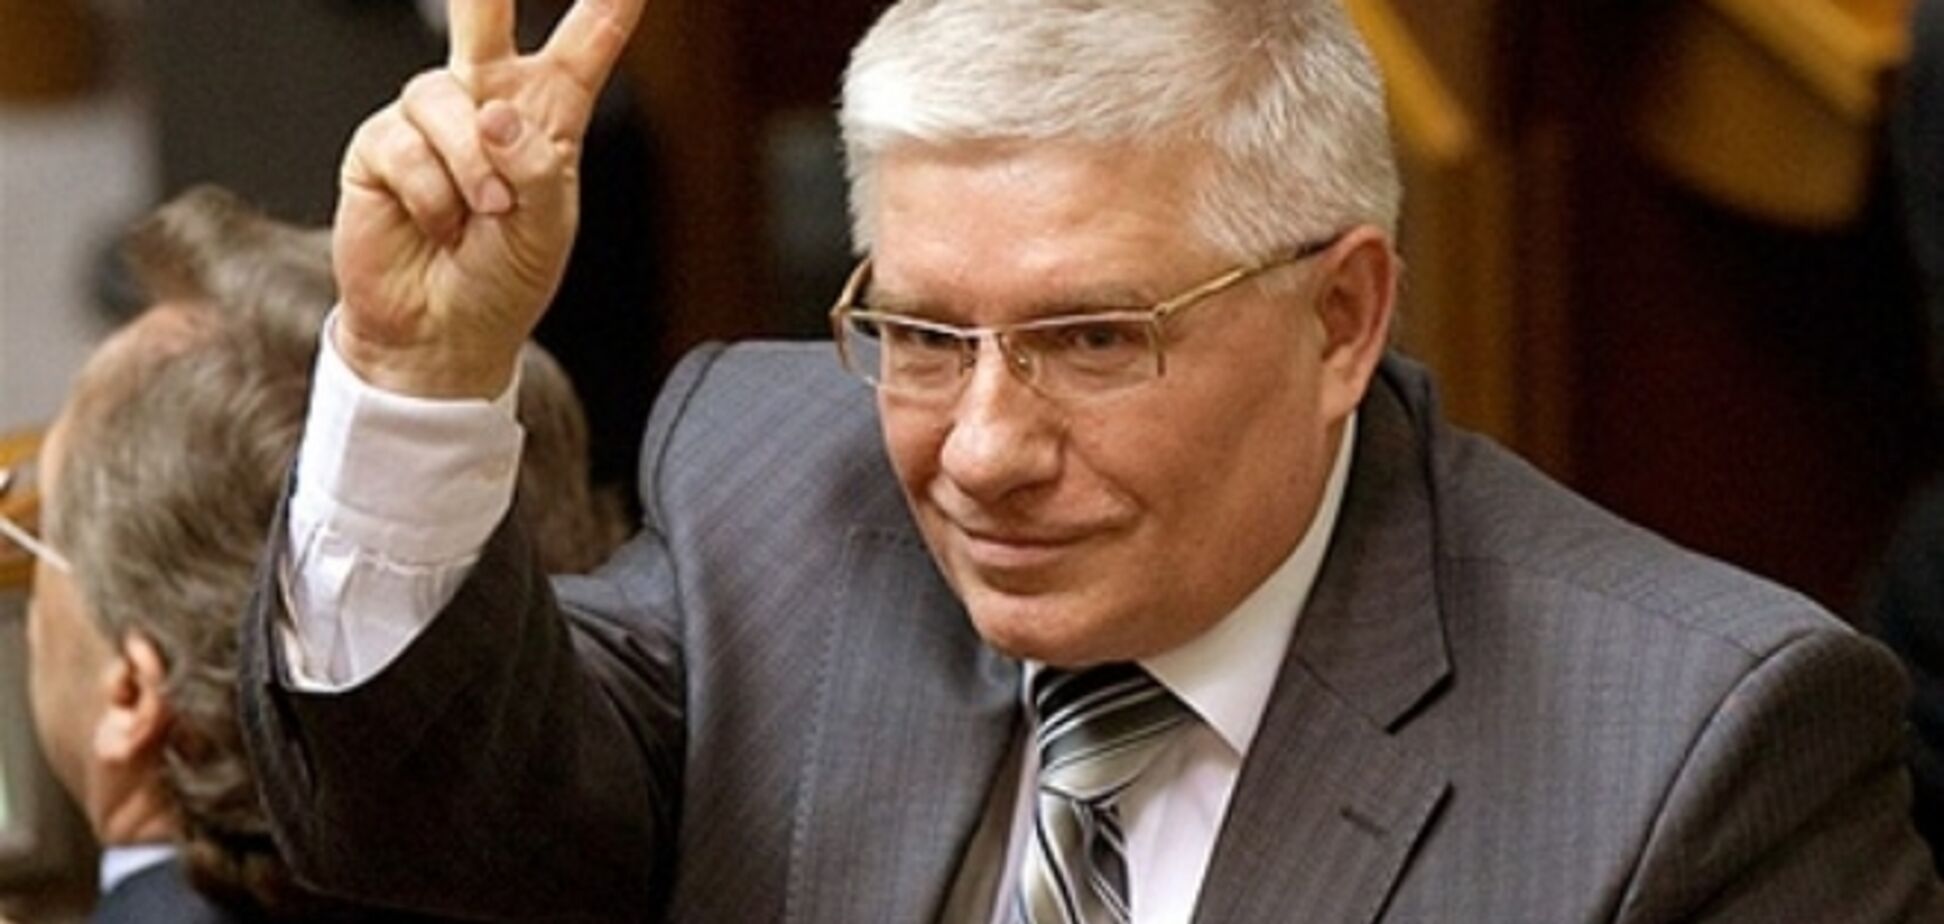 Чечетова не выпускают на волю даже после внесения залога – адвокат 